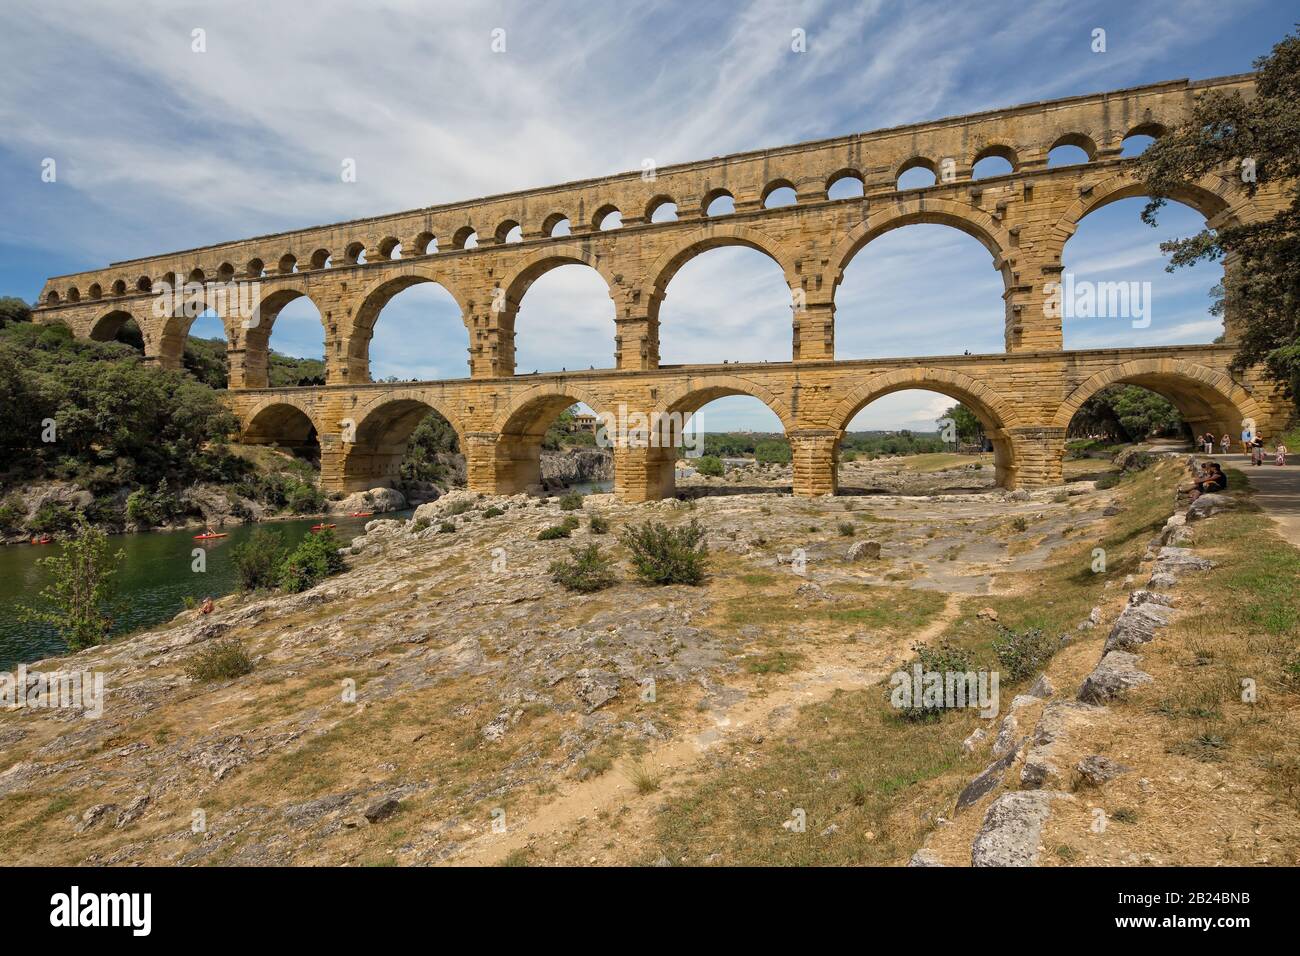 Pont du Gard, Provenza, Francia - Jun 05 2017: Turistas que visitan el Pont du Gard, un antiguo puente acueducto romano que cruza el río Gardon Foto de stock